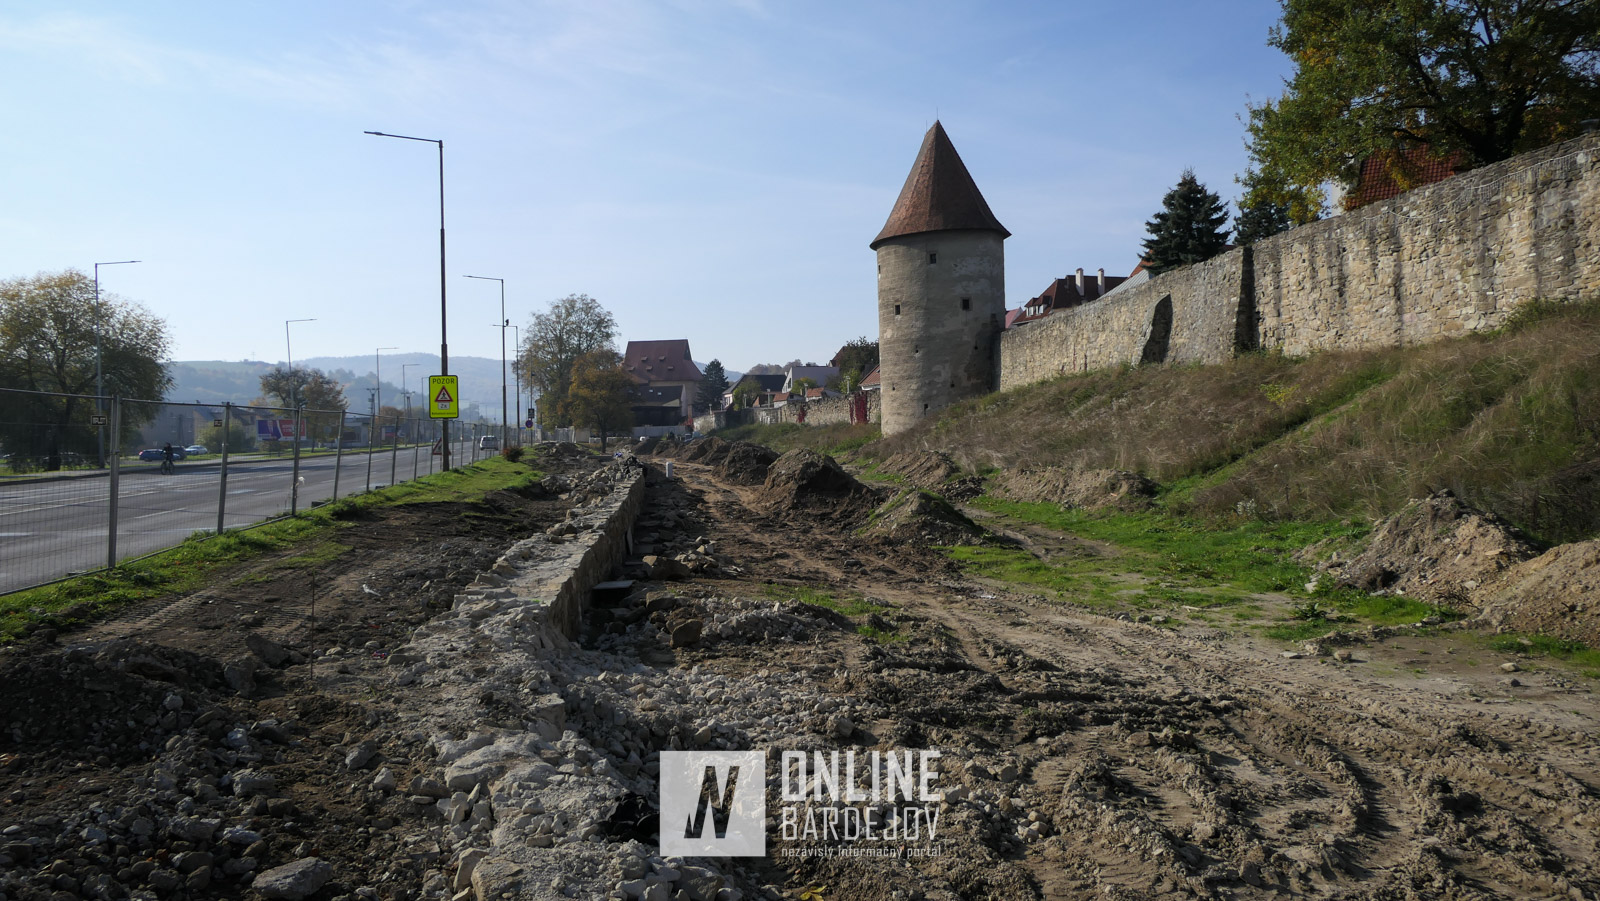 OBRAZOM: Priekopový múr východného hradobného opevnenia sa dostáva nad terén.